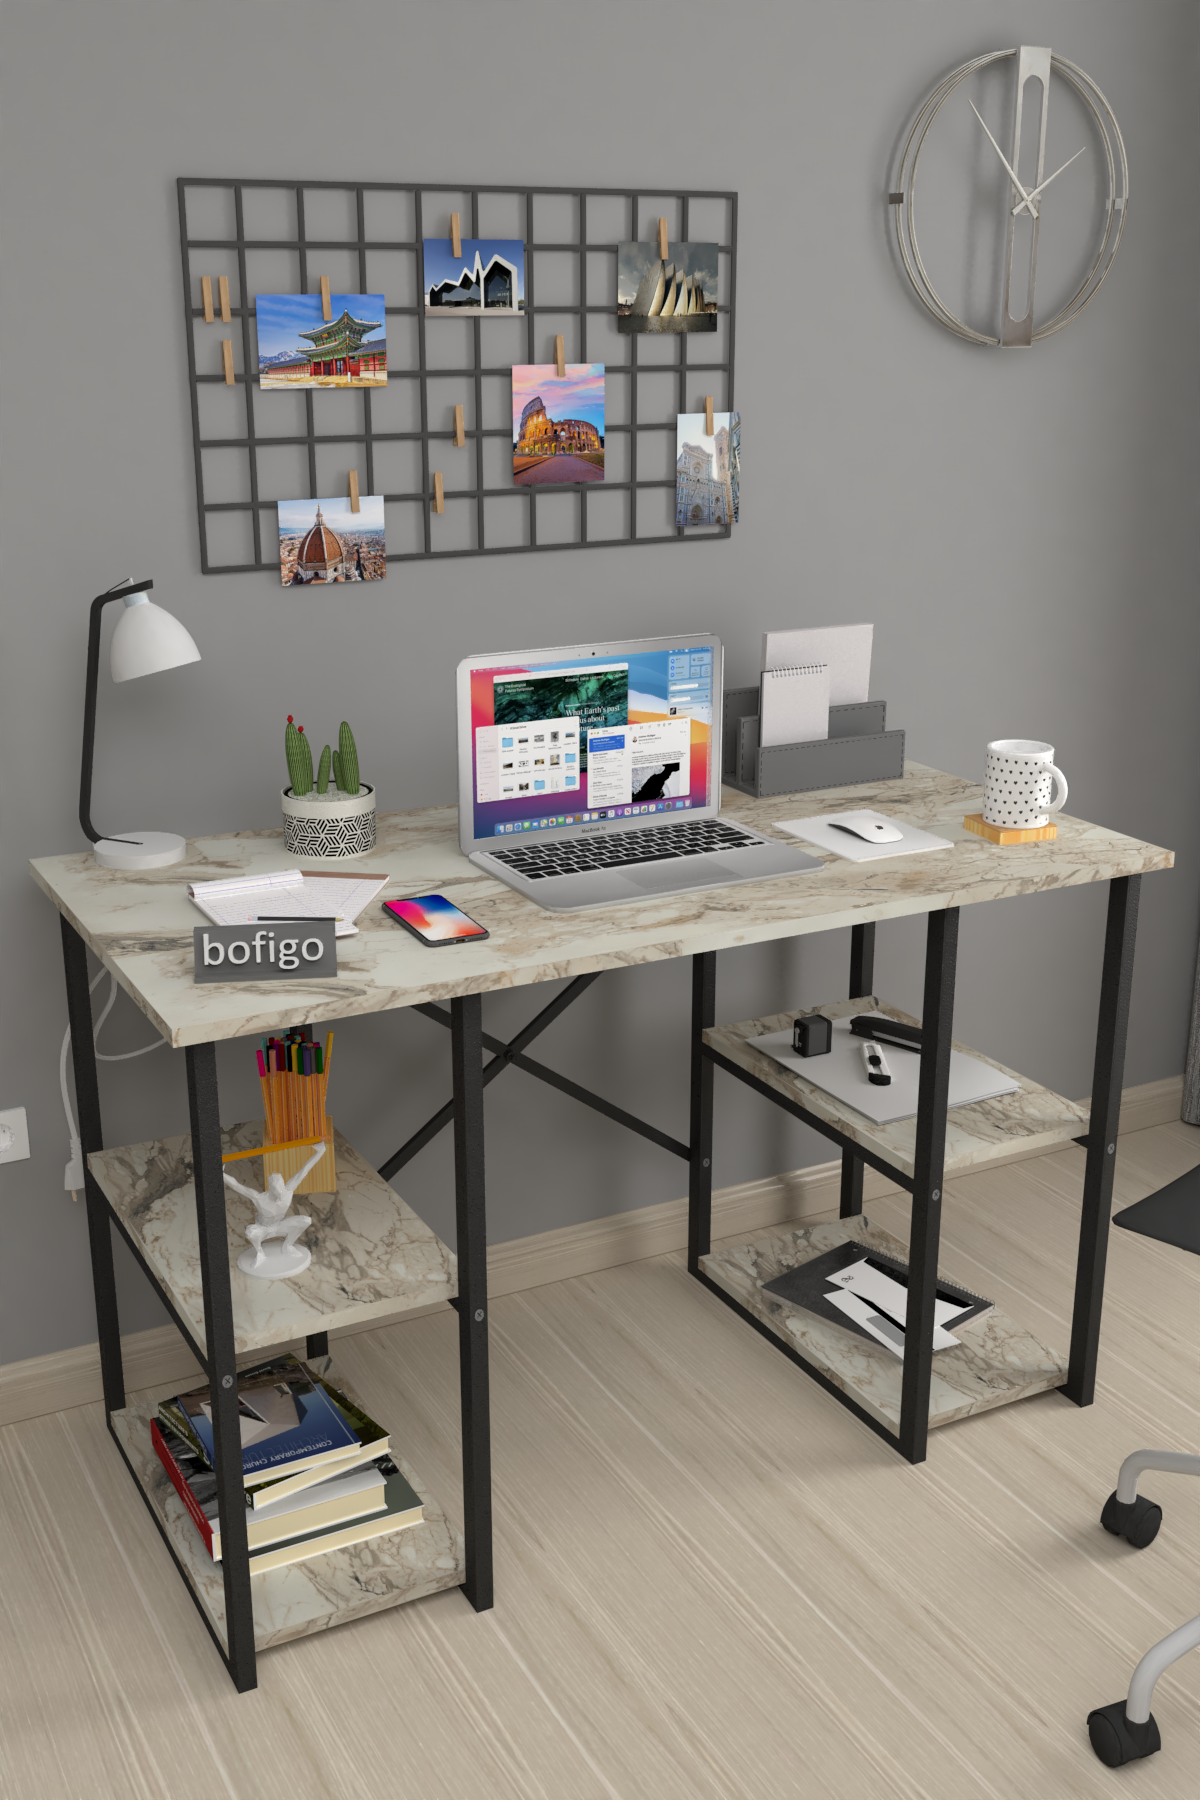 Bofigo 4 Shelf Study Desk 60x120 cm Efes